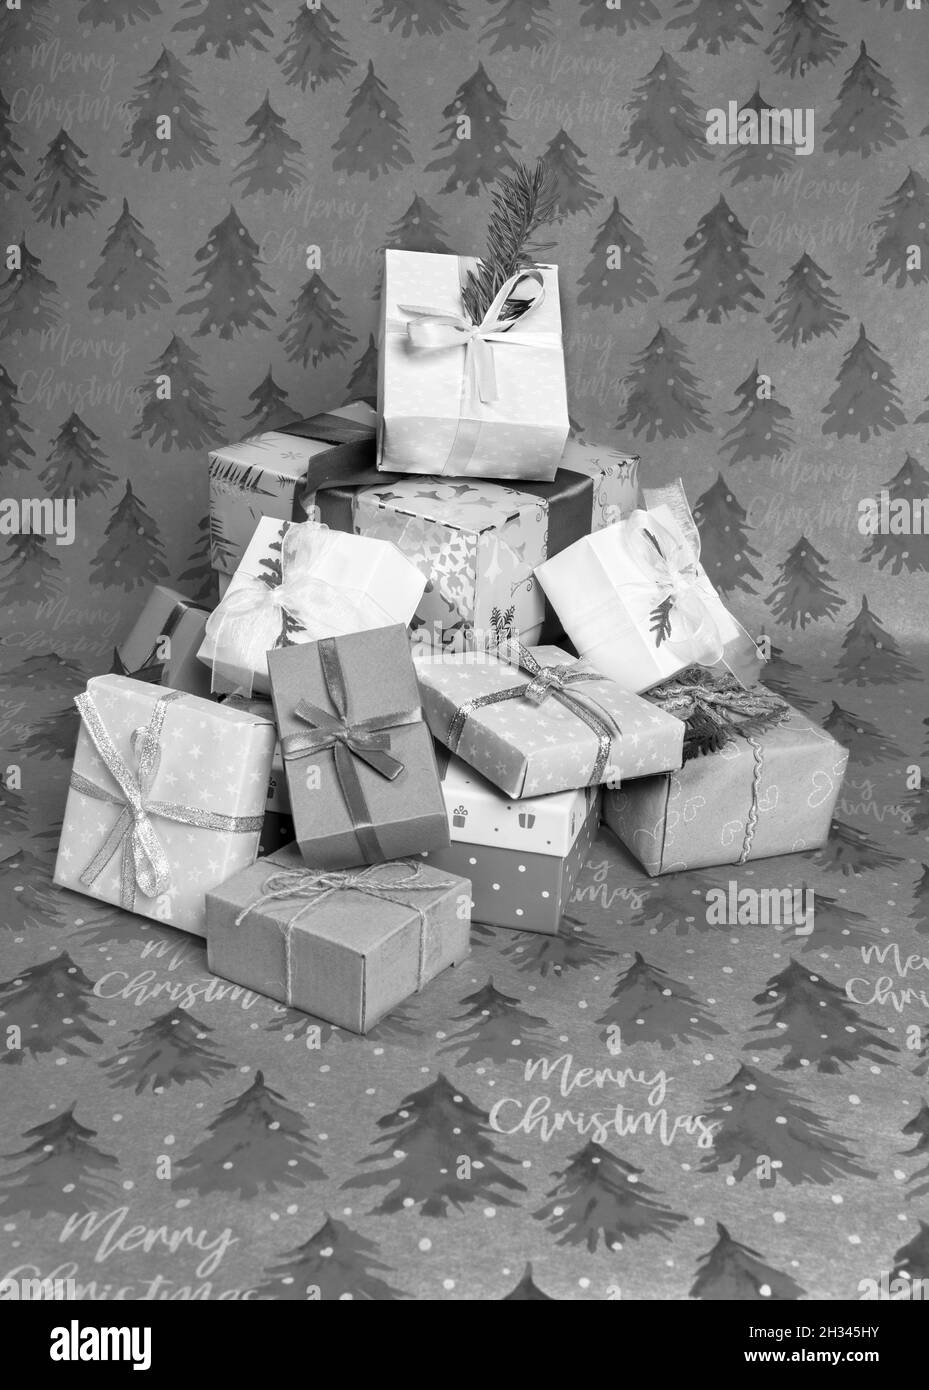 Mucchio di Natale scatole regalo decorate a mano di varie forme e dimensioni su carte da imballaggio festive con spruces e iscrizioni Buon Natale. Natale holi Foto Stock